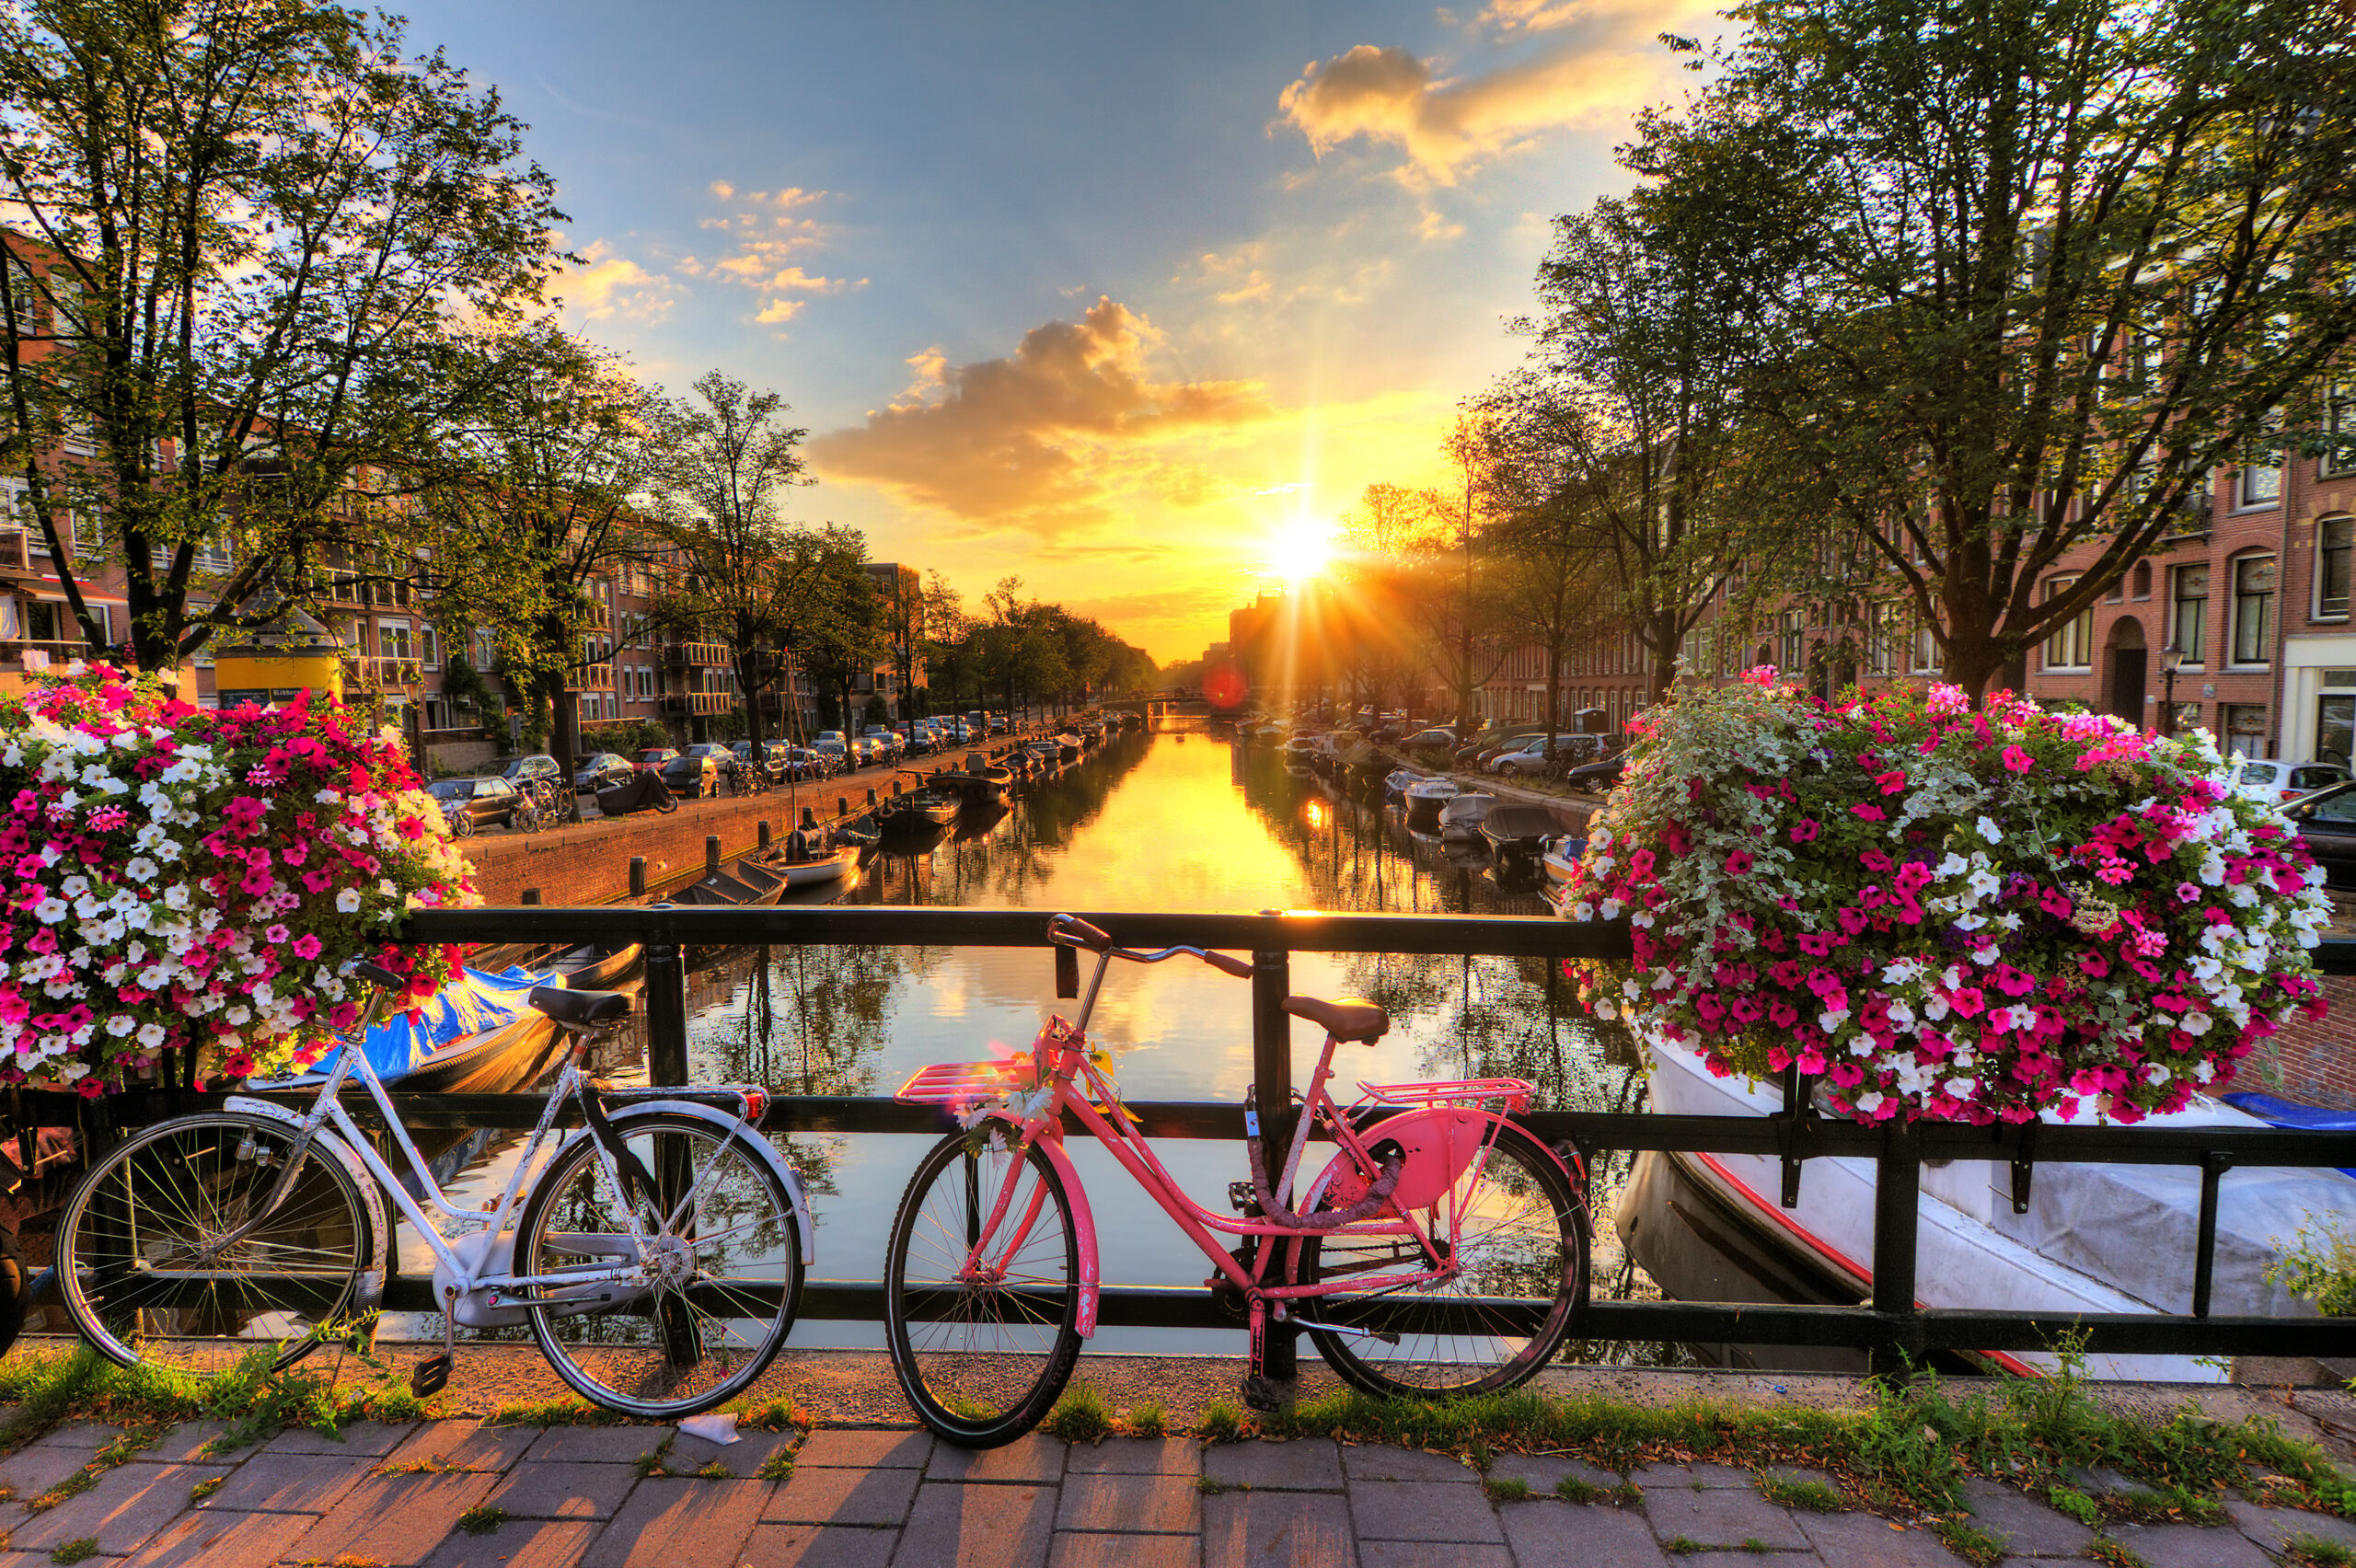 Springtime in Amsterdam (Photo Credit: Dennis van de Water / Shutterstock)